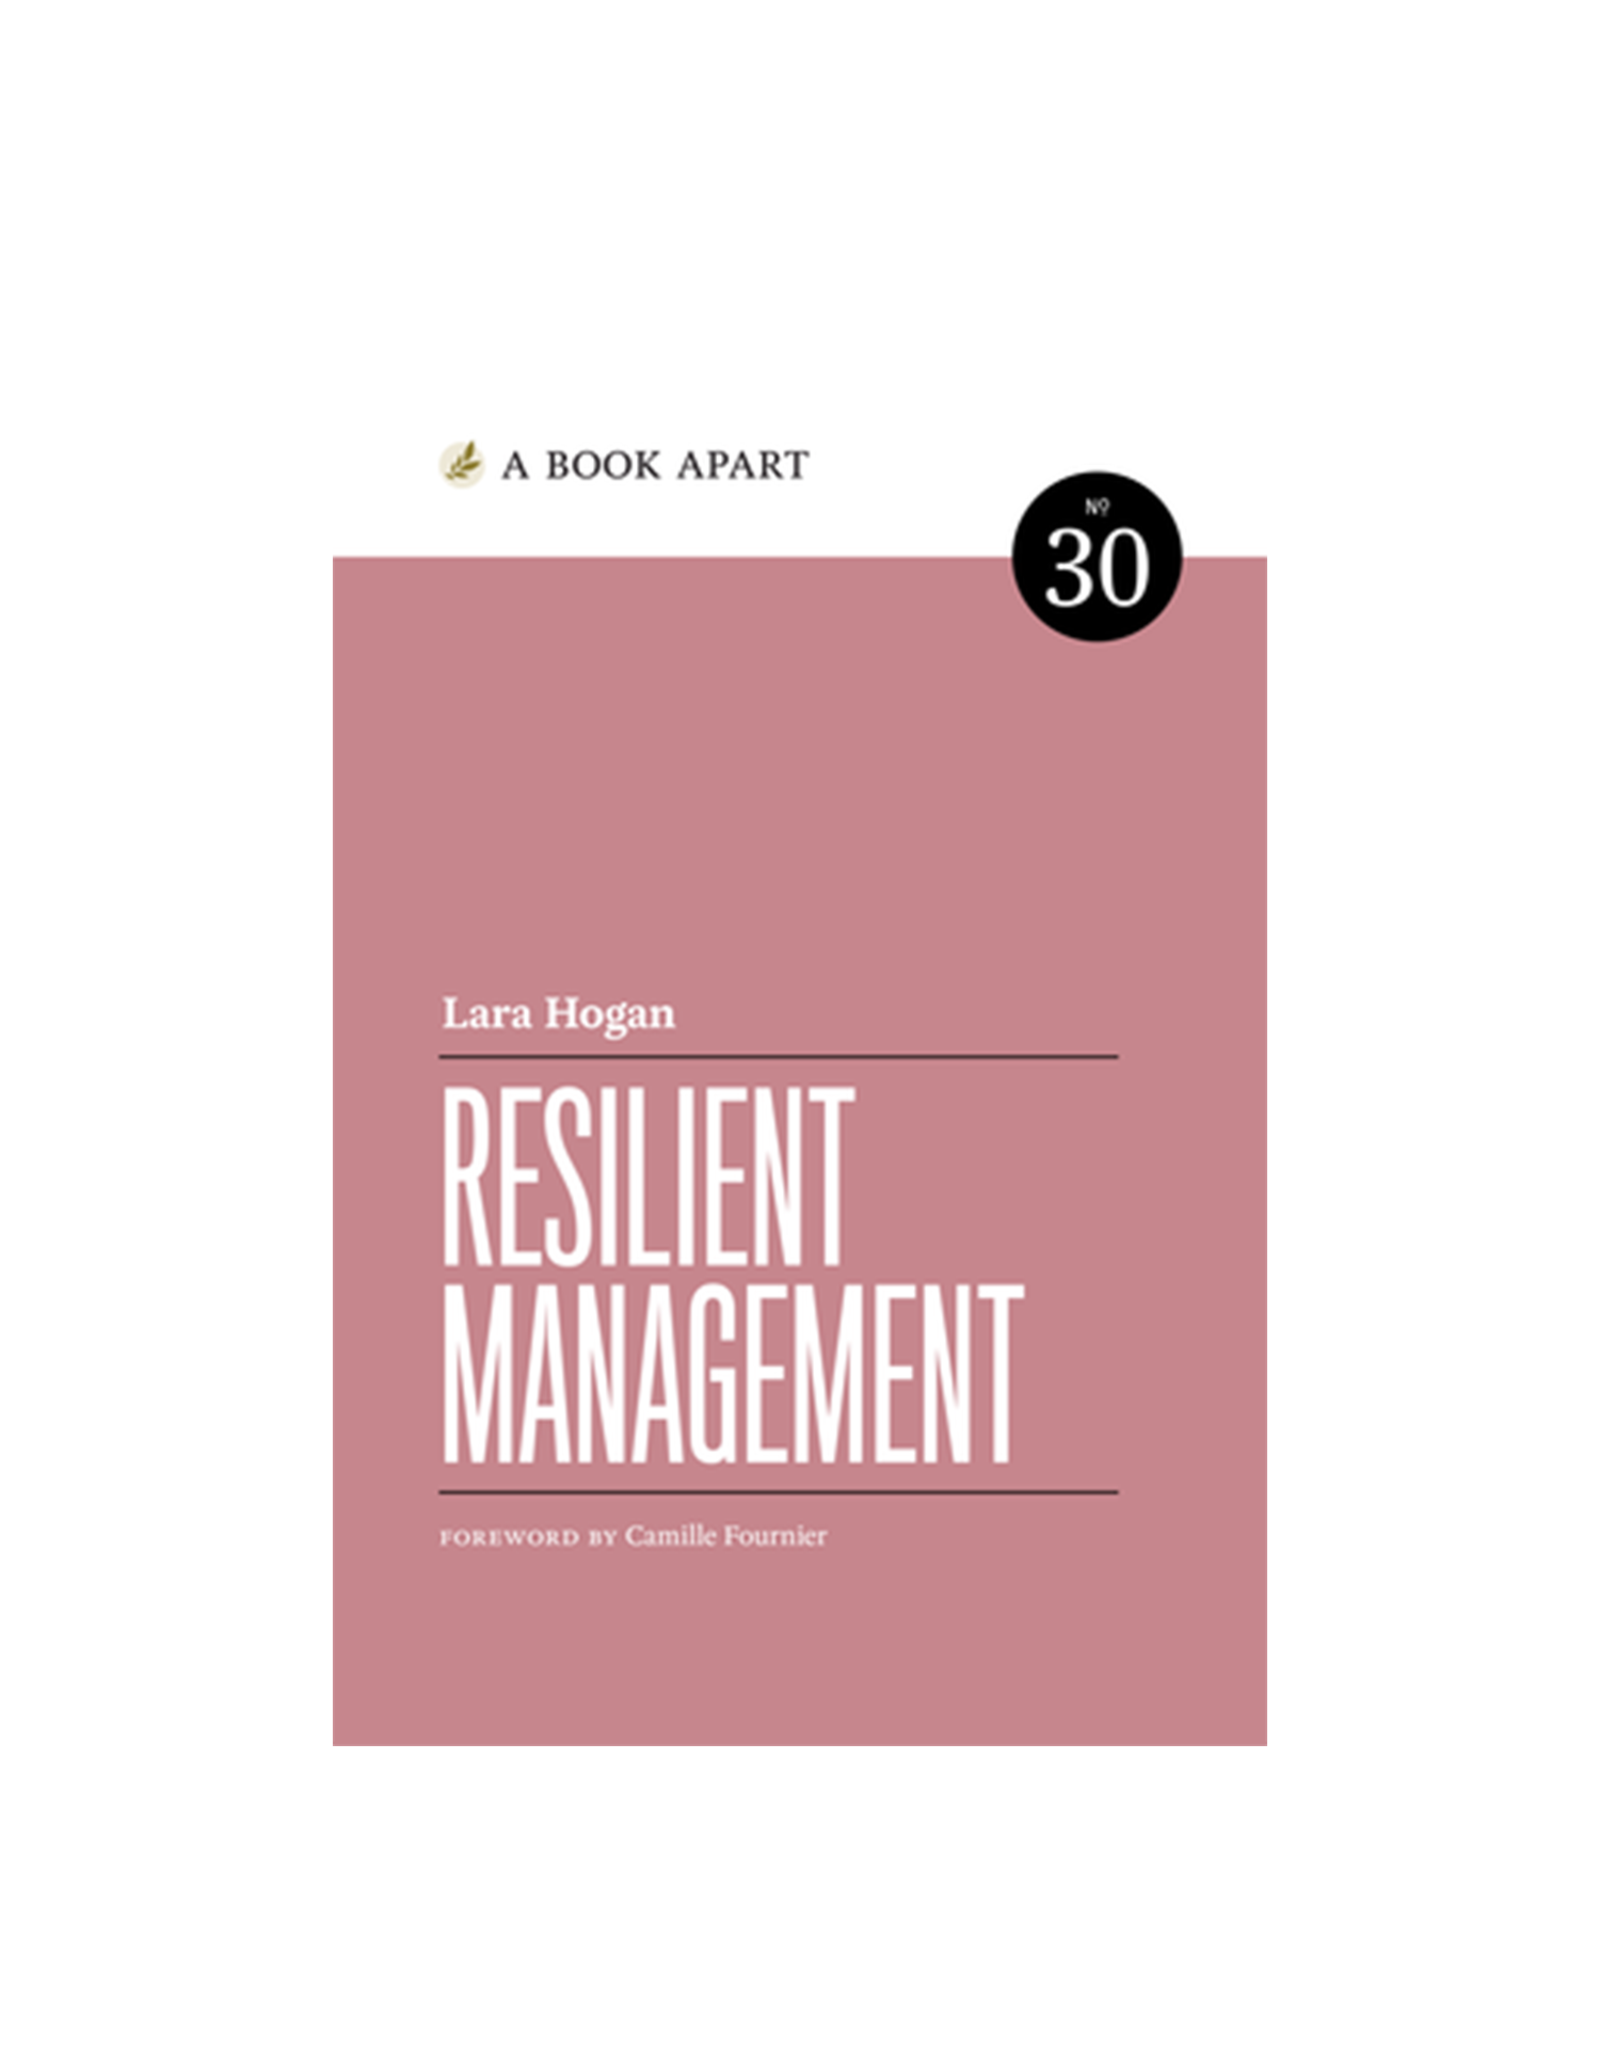 A Book Apart: Resilient Management (No. 30)